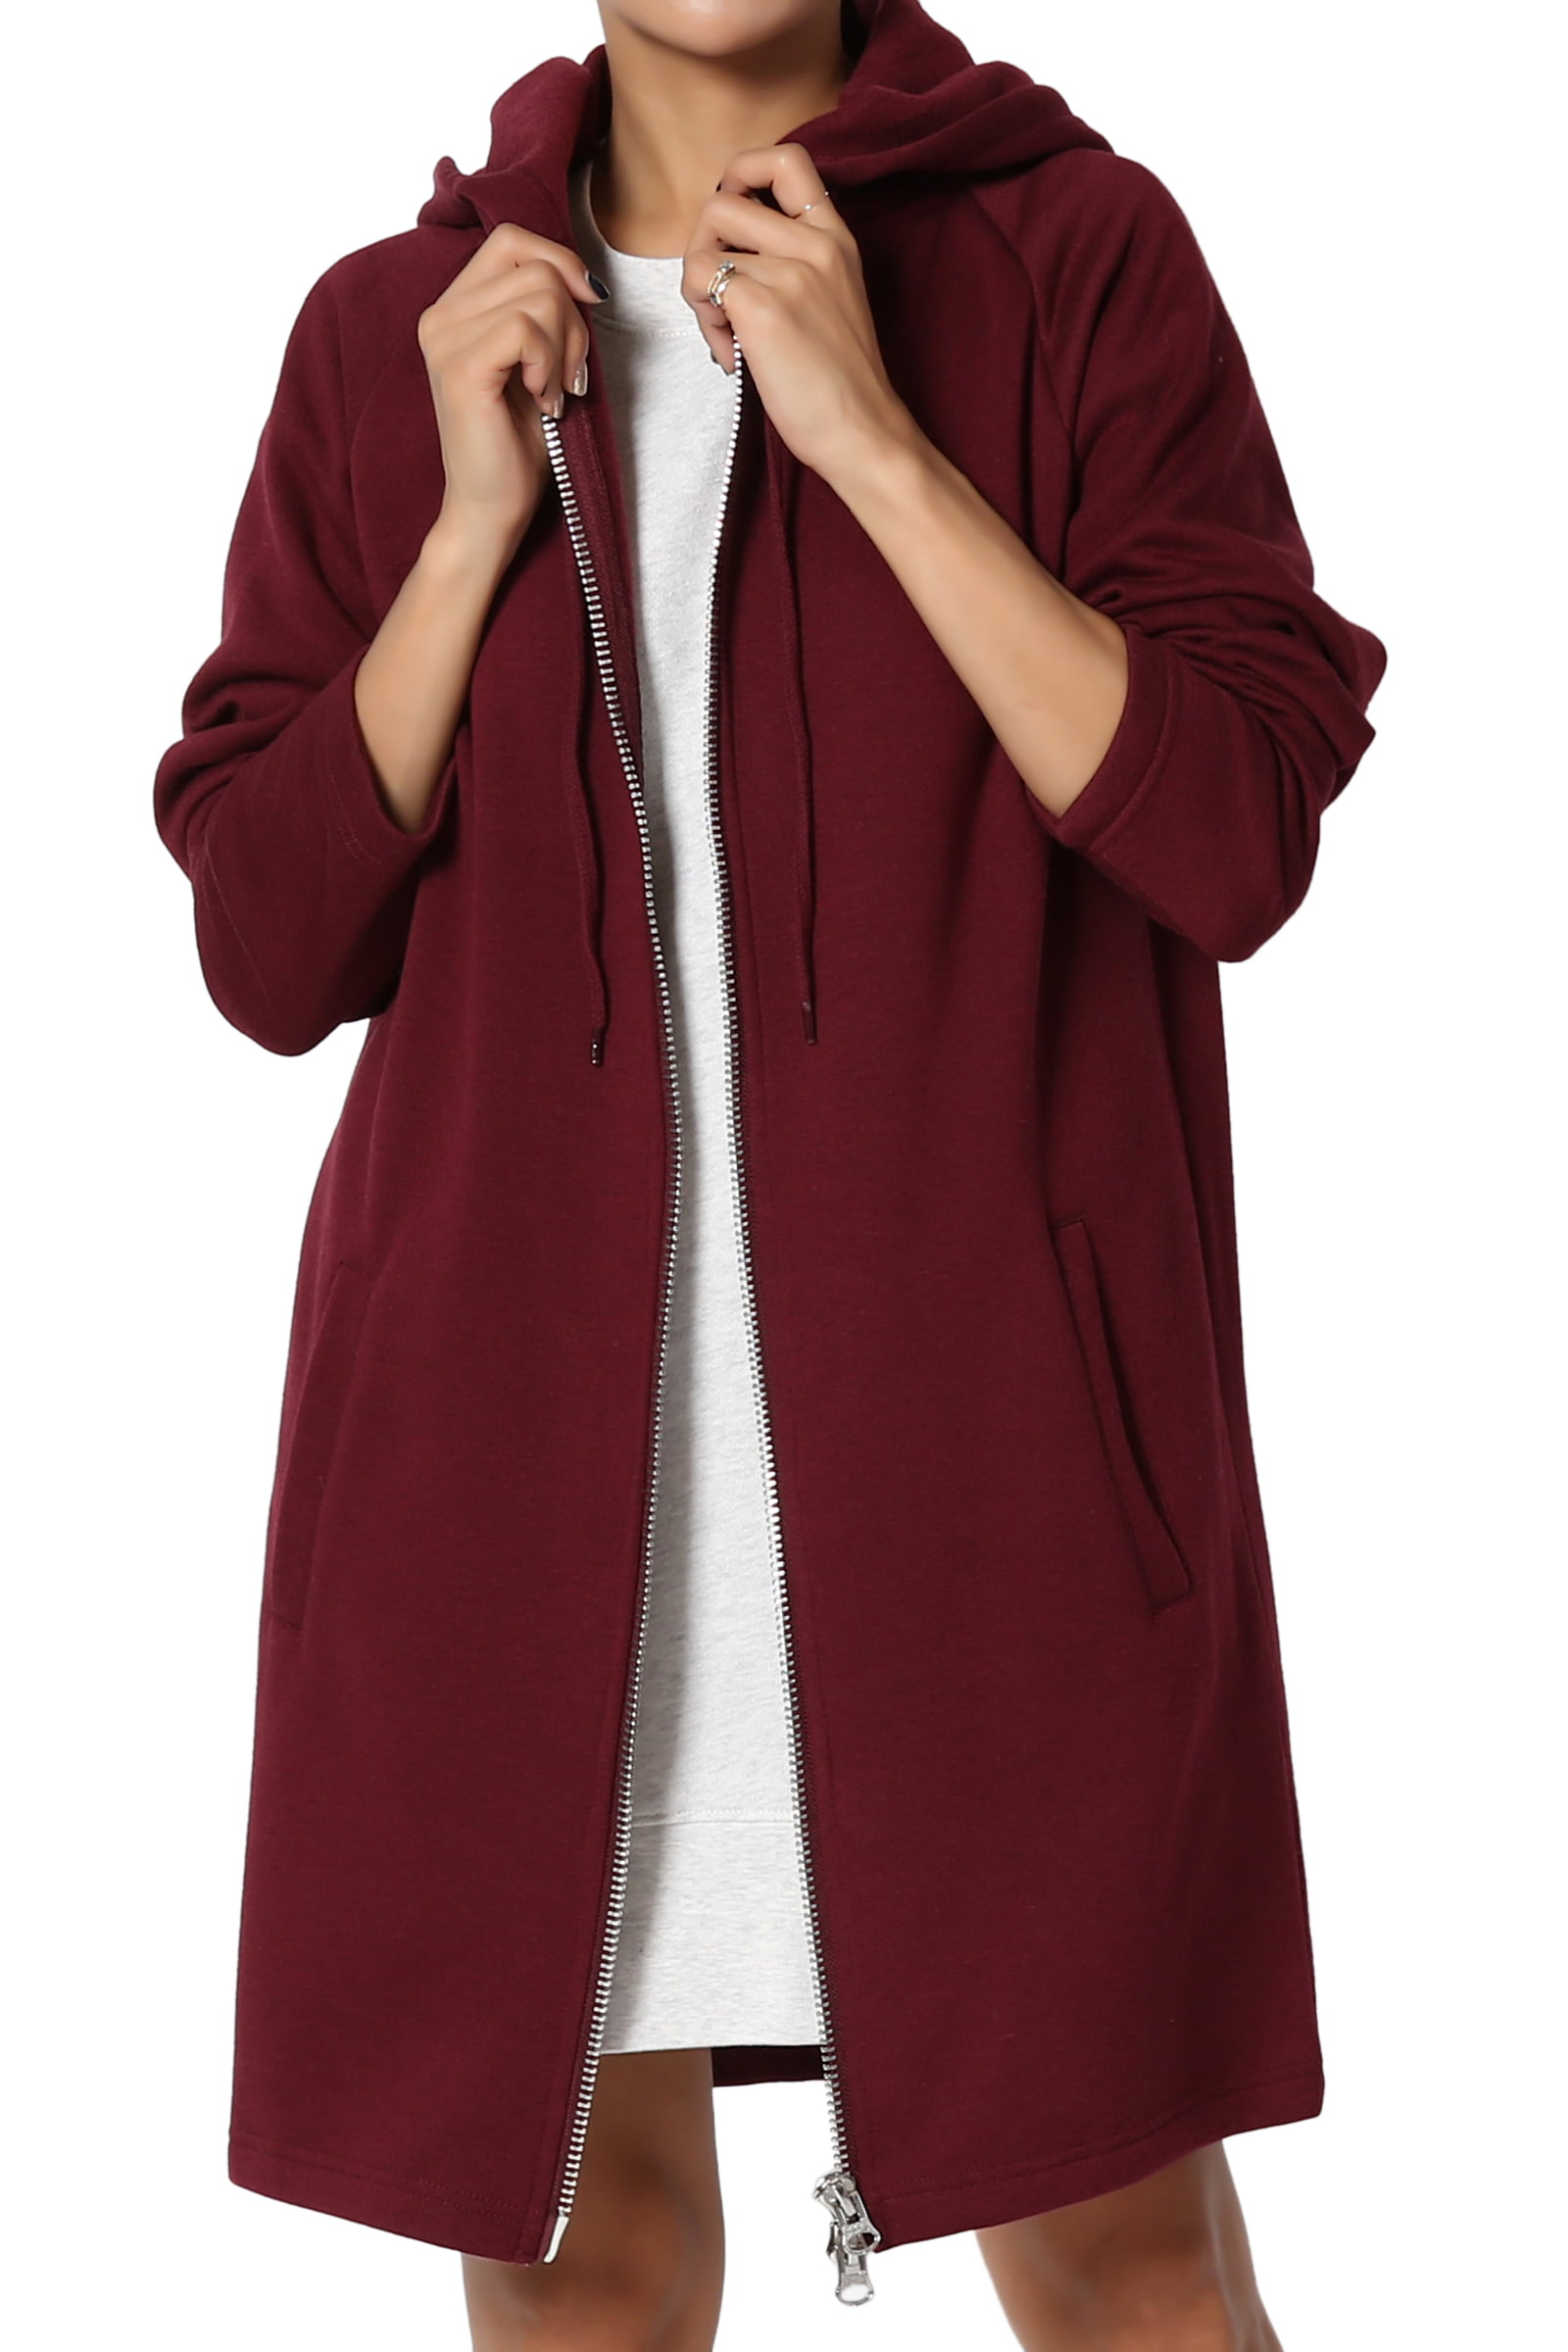 TheMogan Women's PLUS Oversized Hoodie Full Zip Up Long Sleeve Fleece